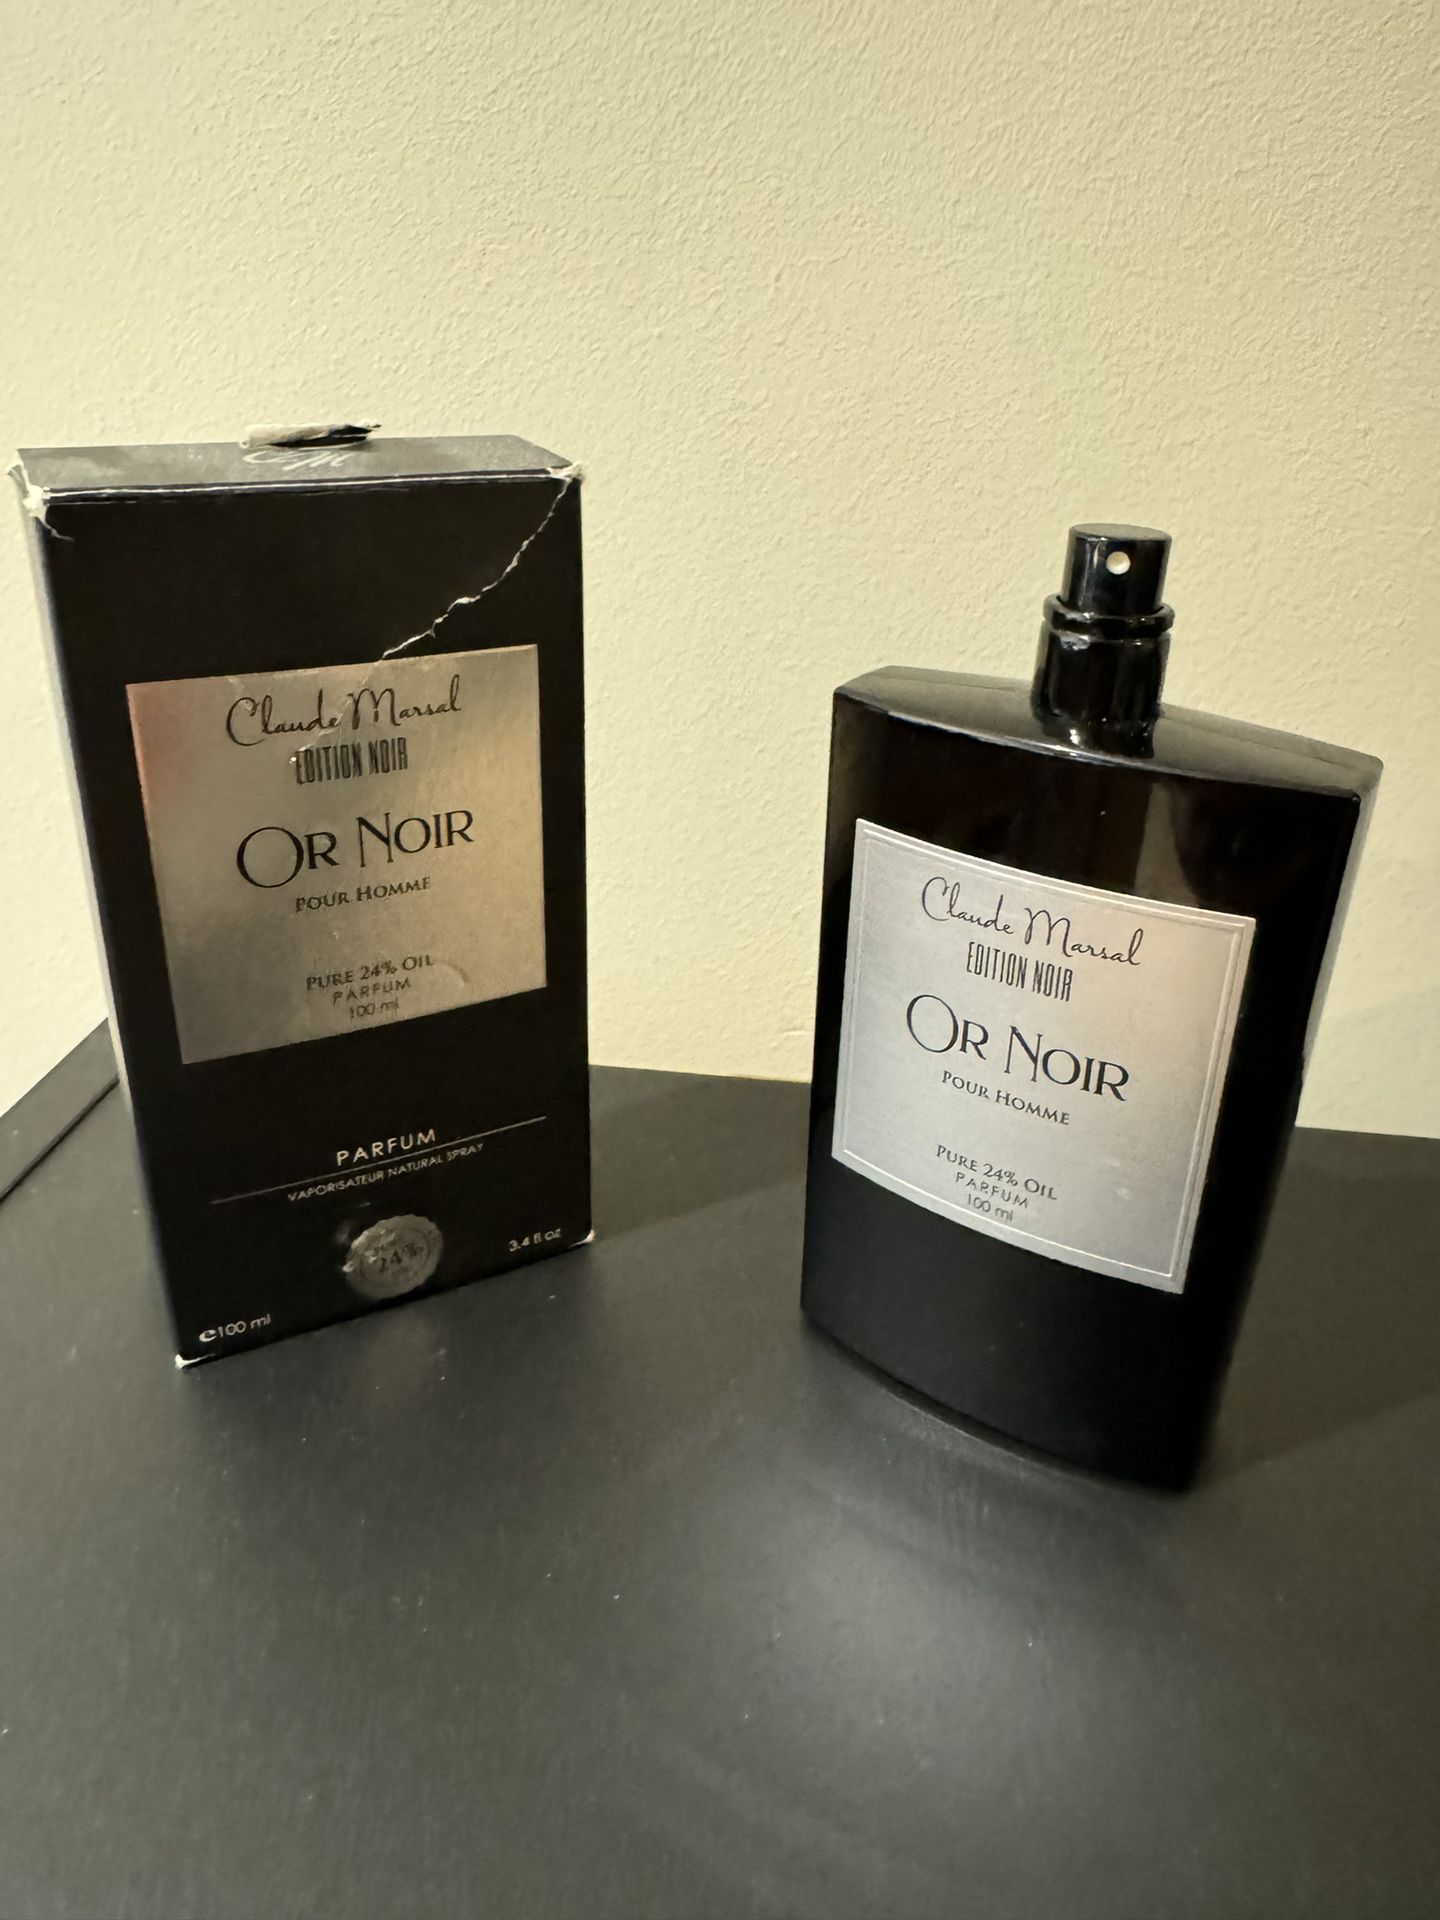 Or Noir Claude Marsal Pour Homme Parfum Pure 24% oil 3.4 fl oz Used 50% Full